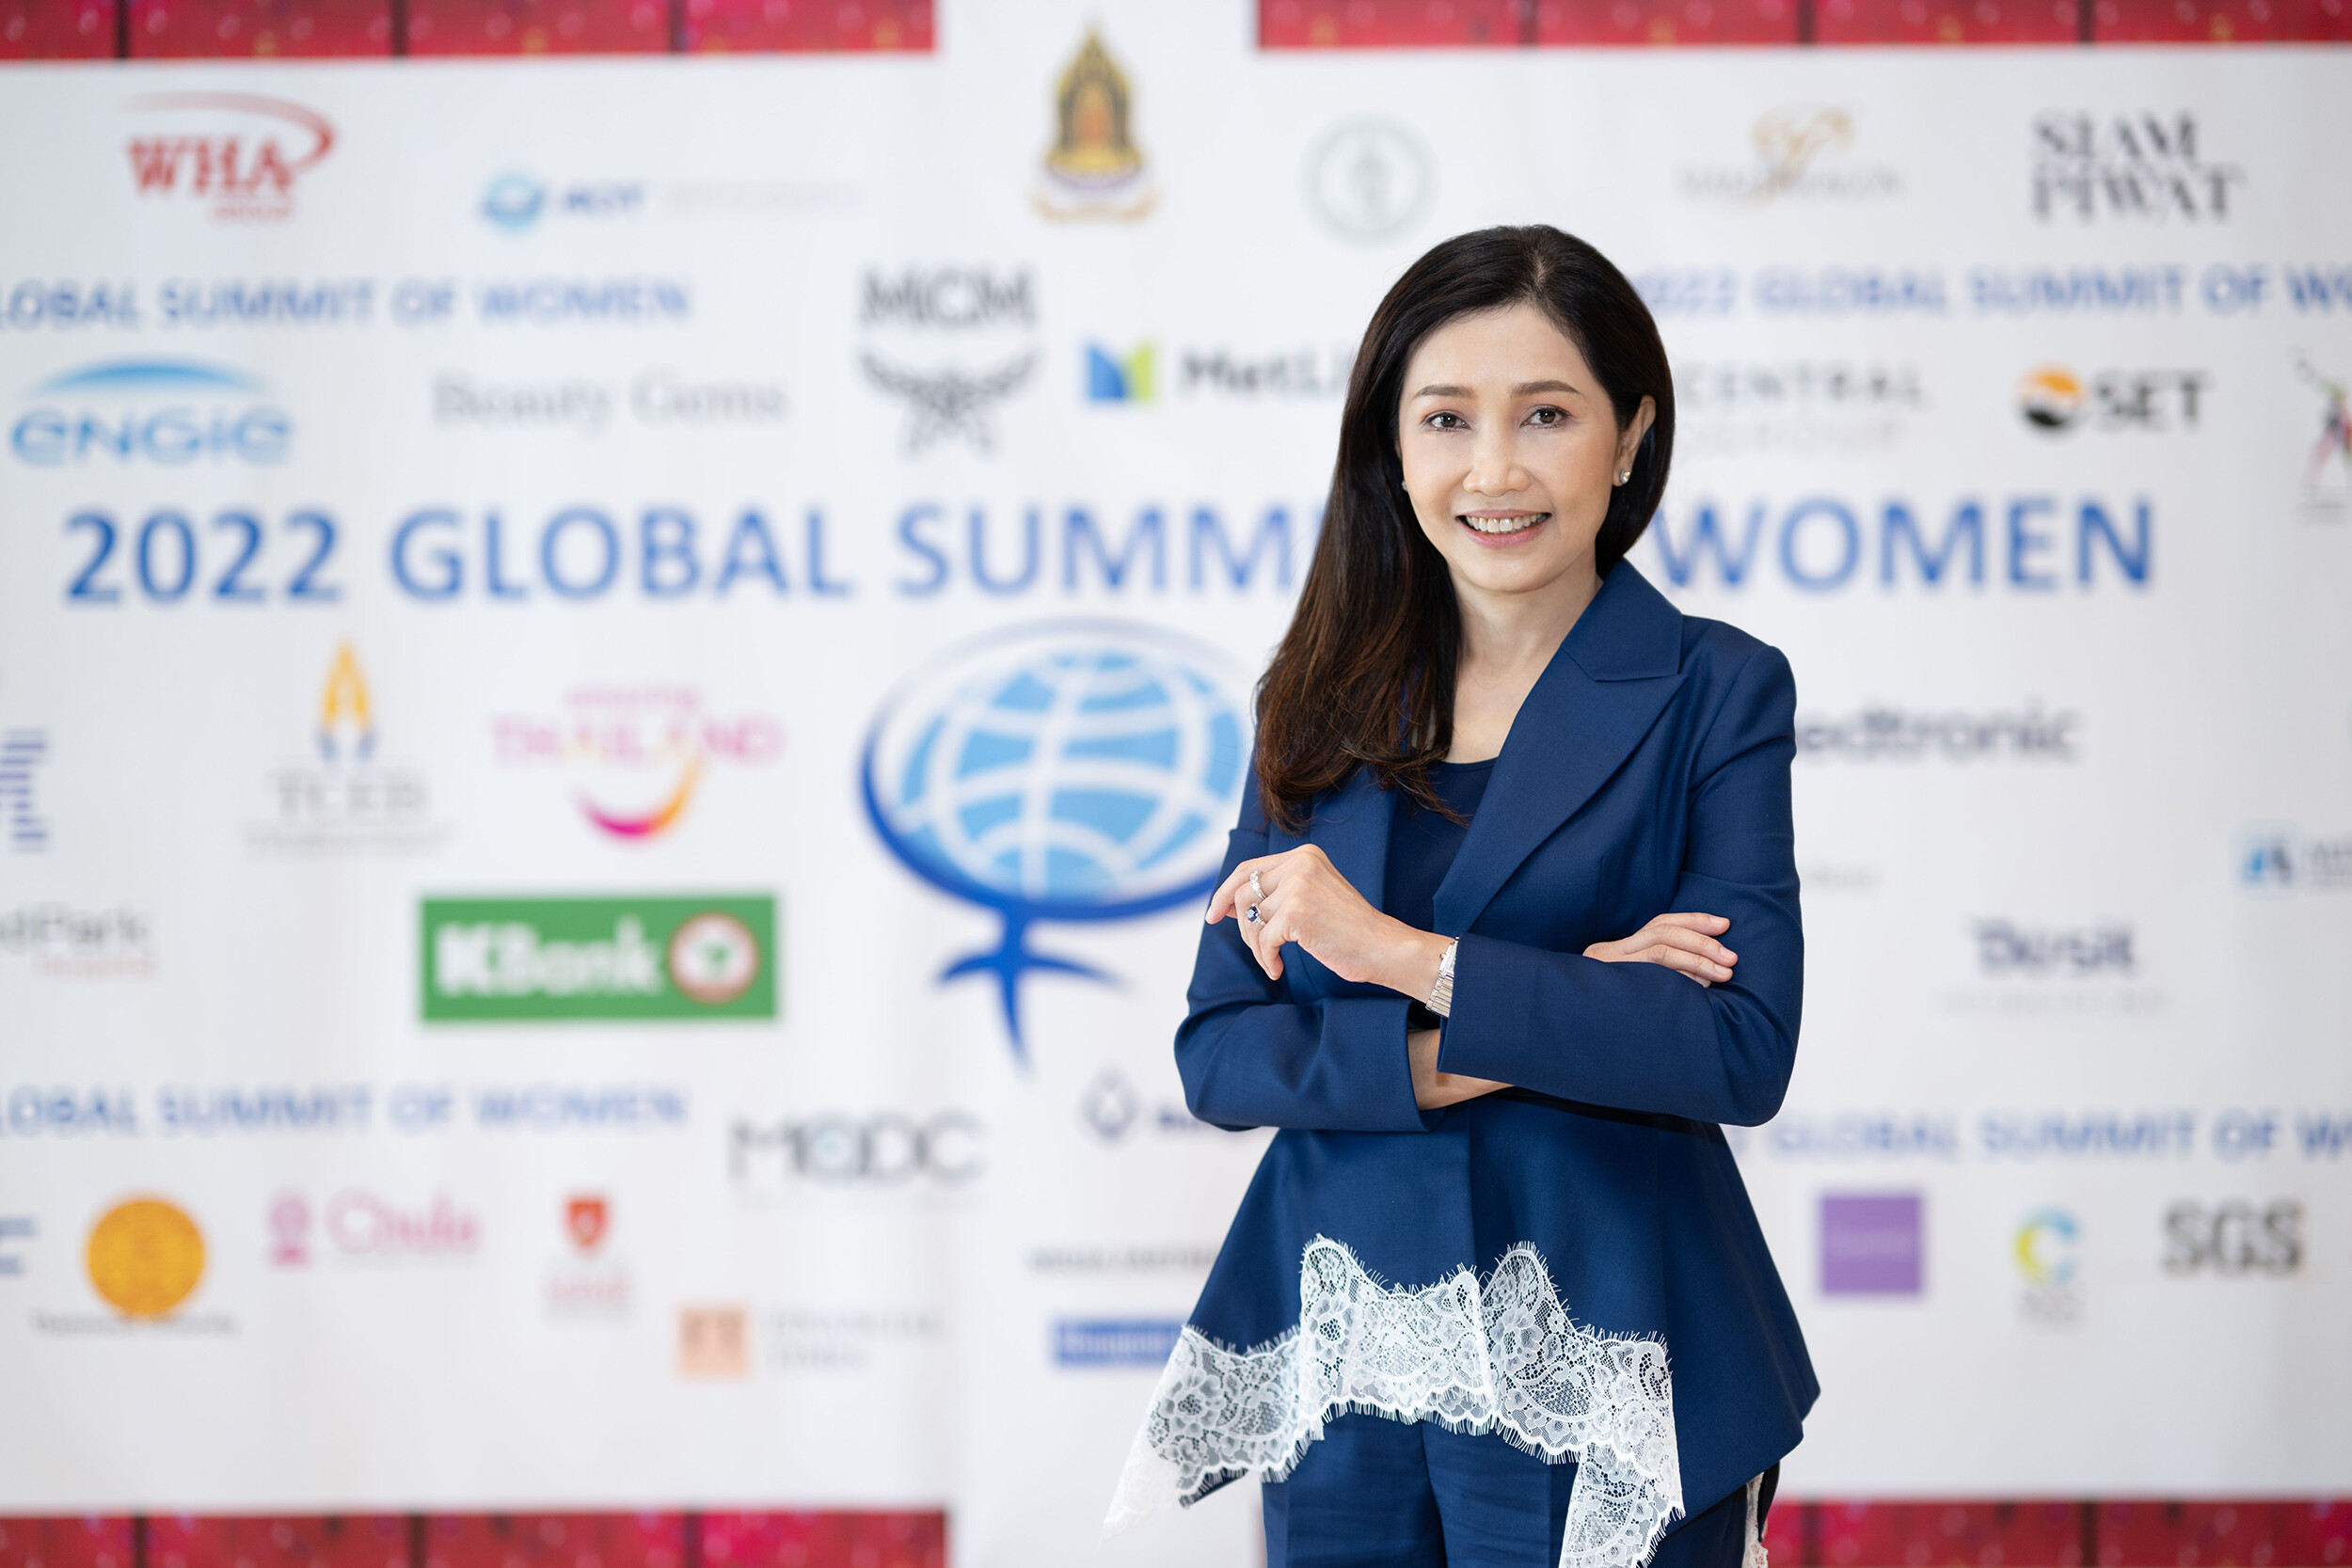 ซีอีโอกสิกรไทยร่วมเสวนาในงานประชุม Global Summit of Women 2022